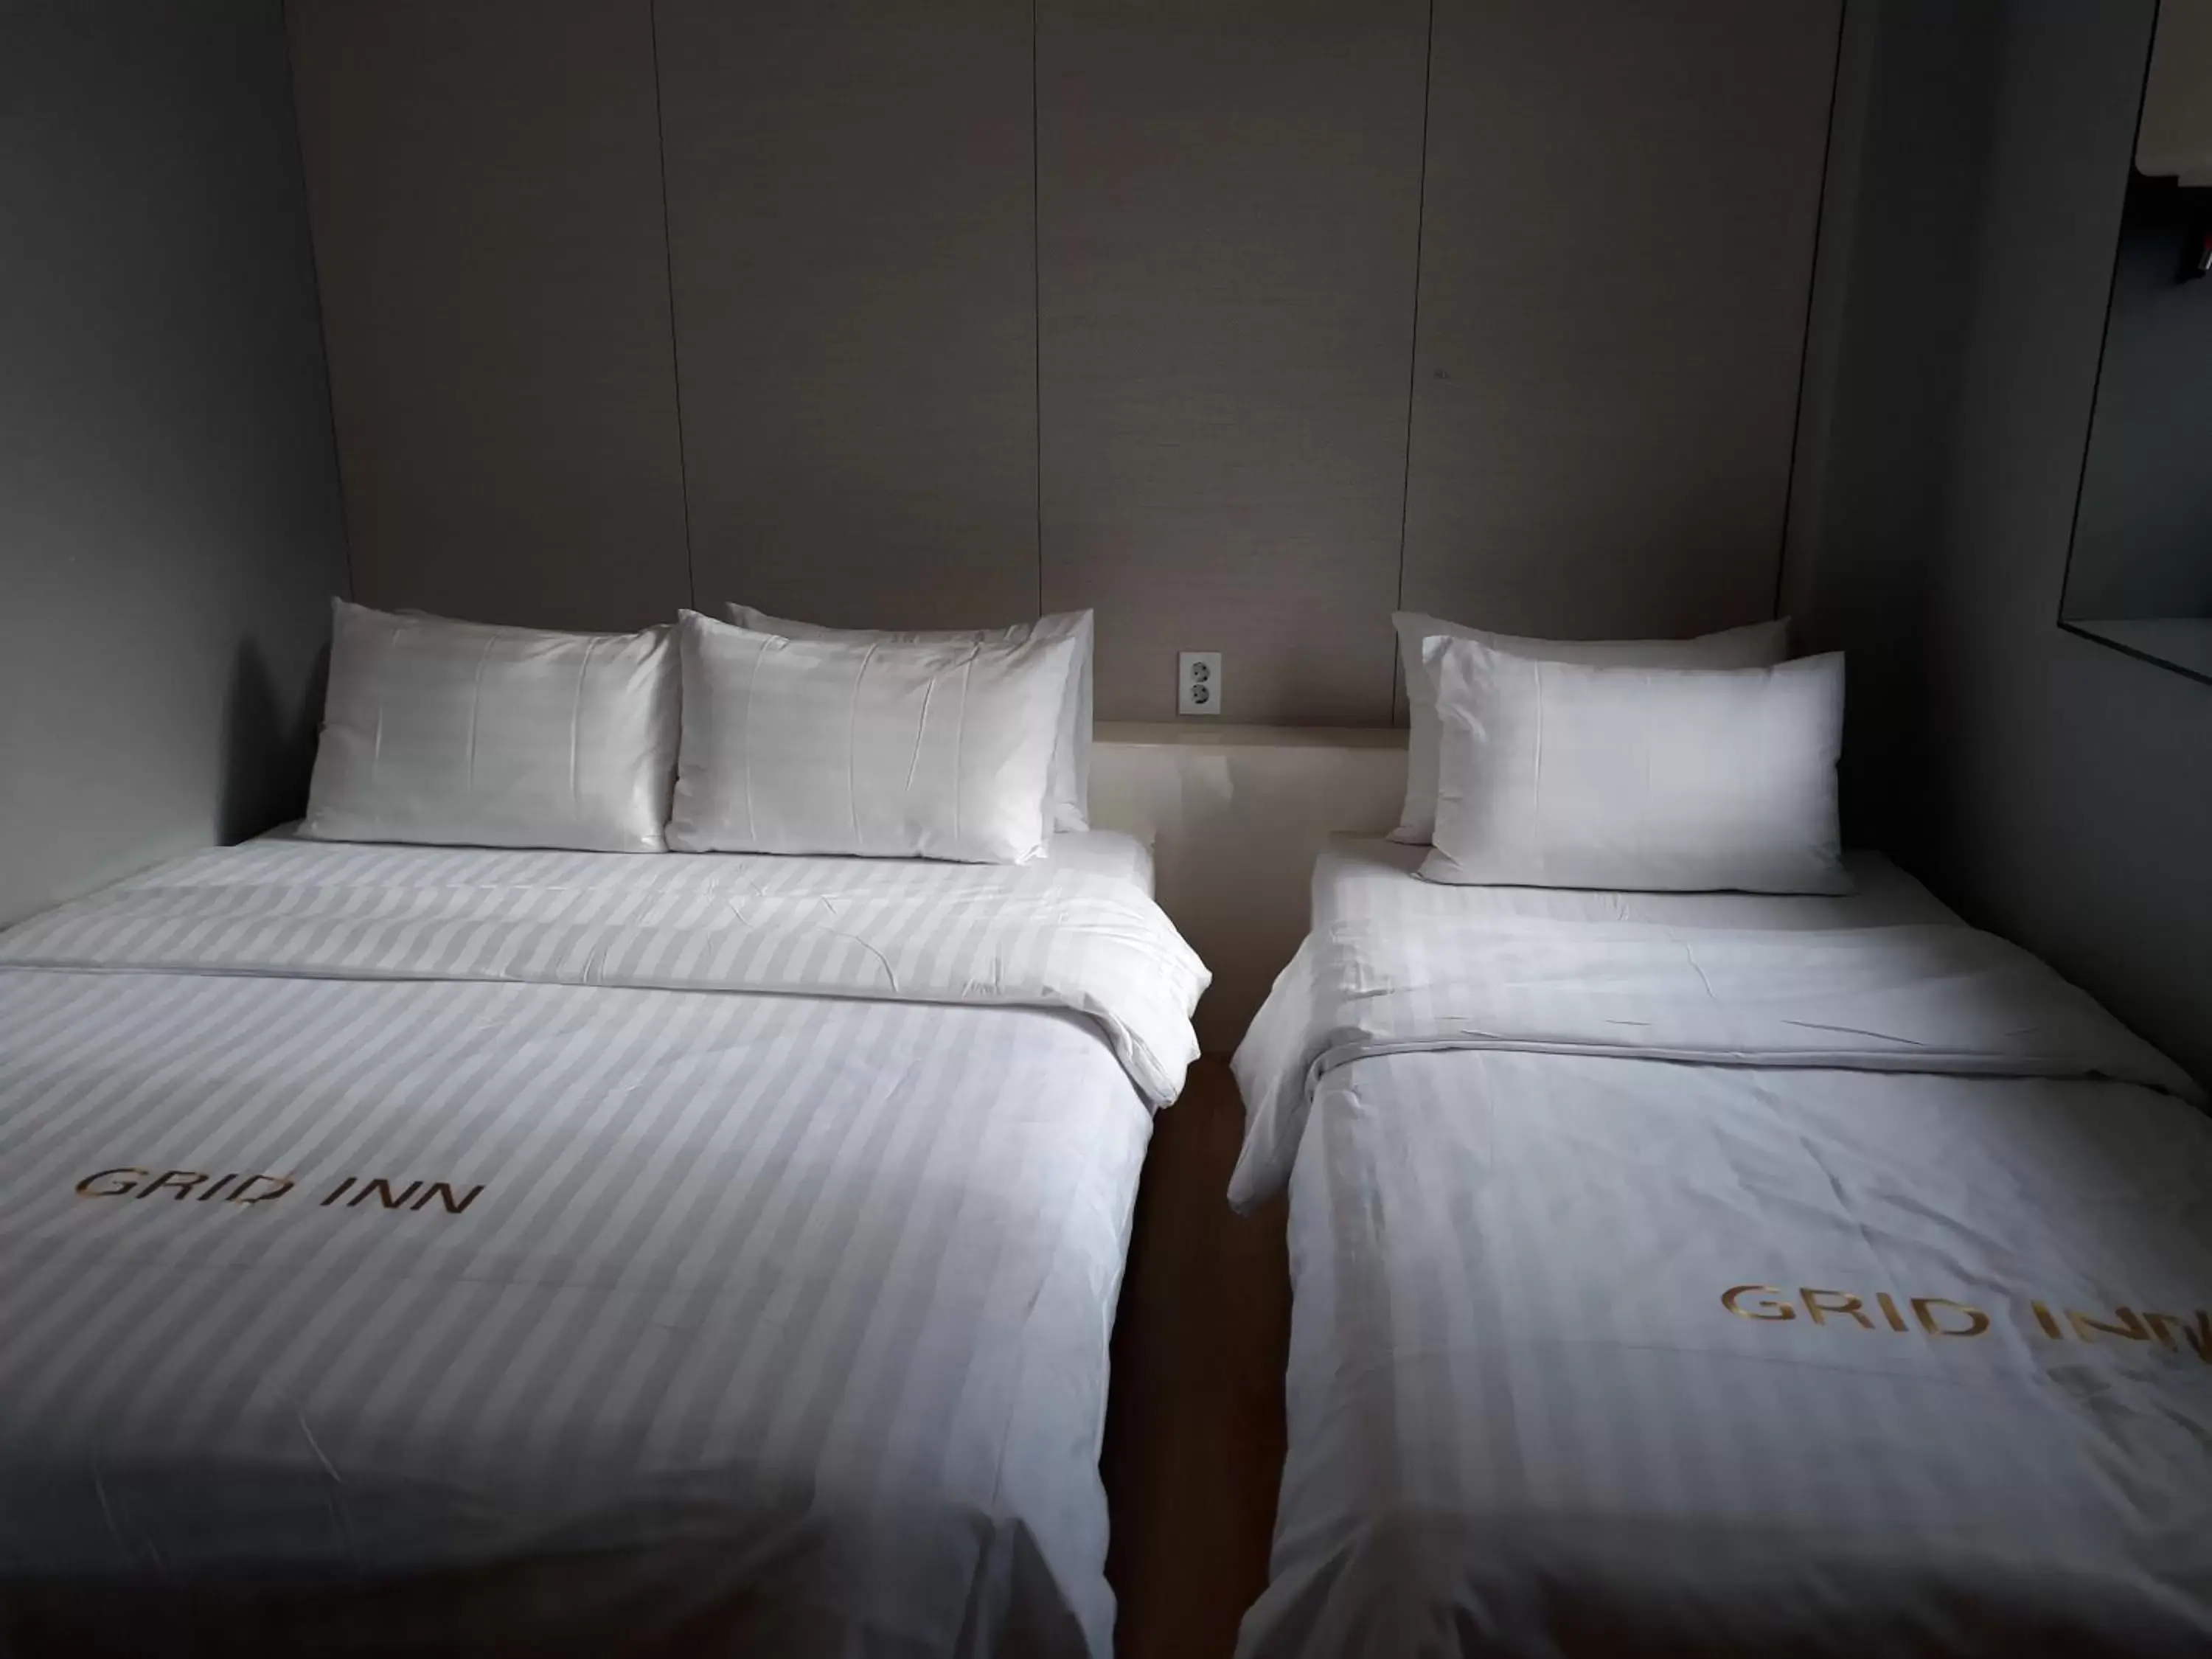 Bedroom, Bed in Grid Inn Hotel